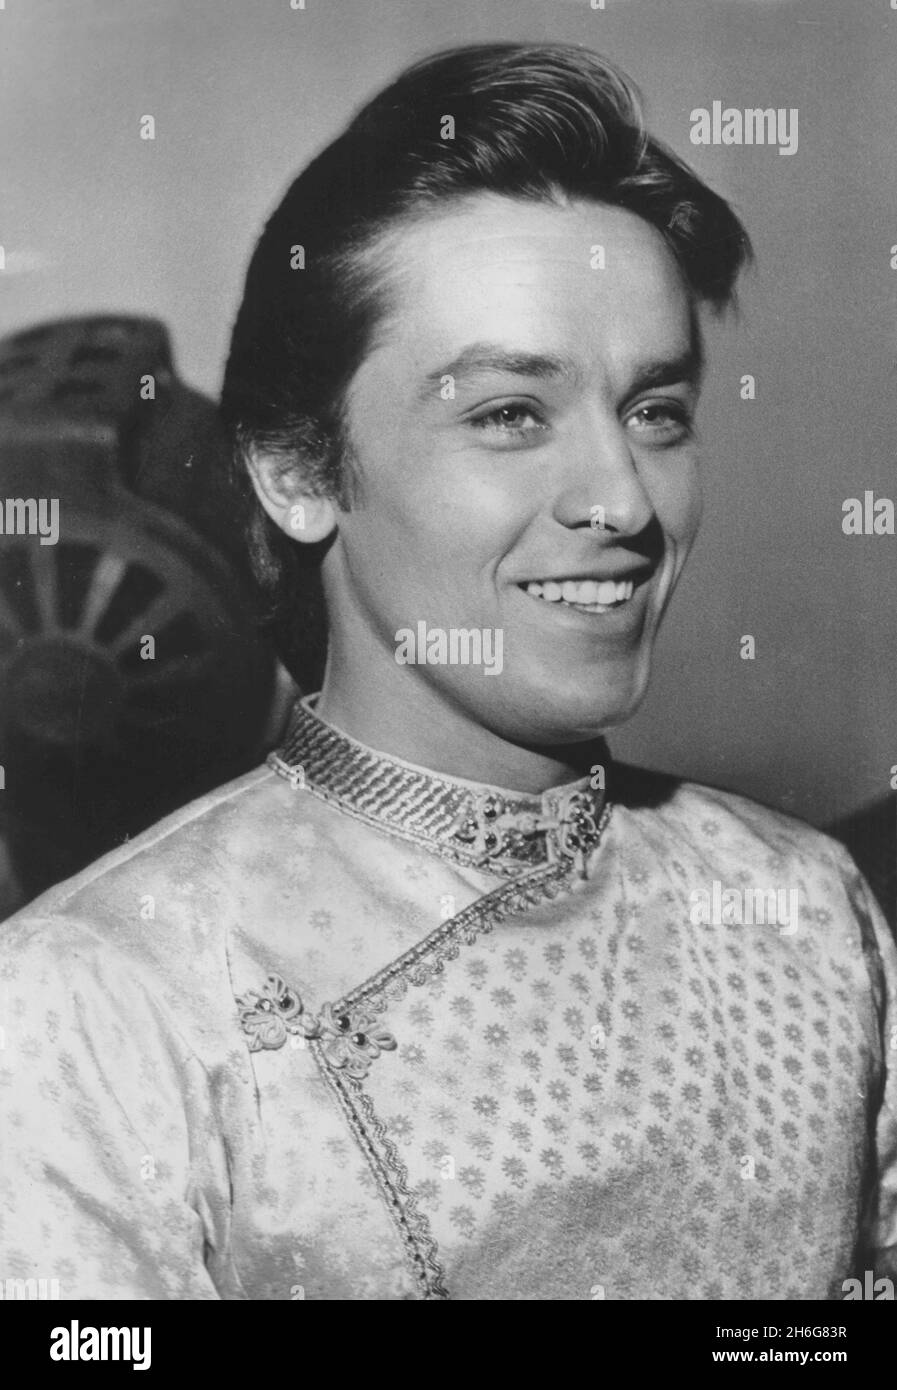 BELGRADO, SERBIA - 1962 - Retrato de la famosa estrella de cine Alain Delon en Belgrado, Serbia en 1962 durante la producción de una película nunca estrenada Foto de stock